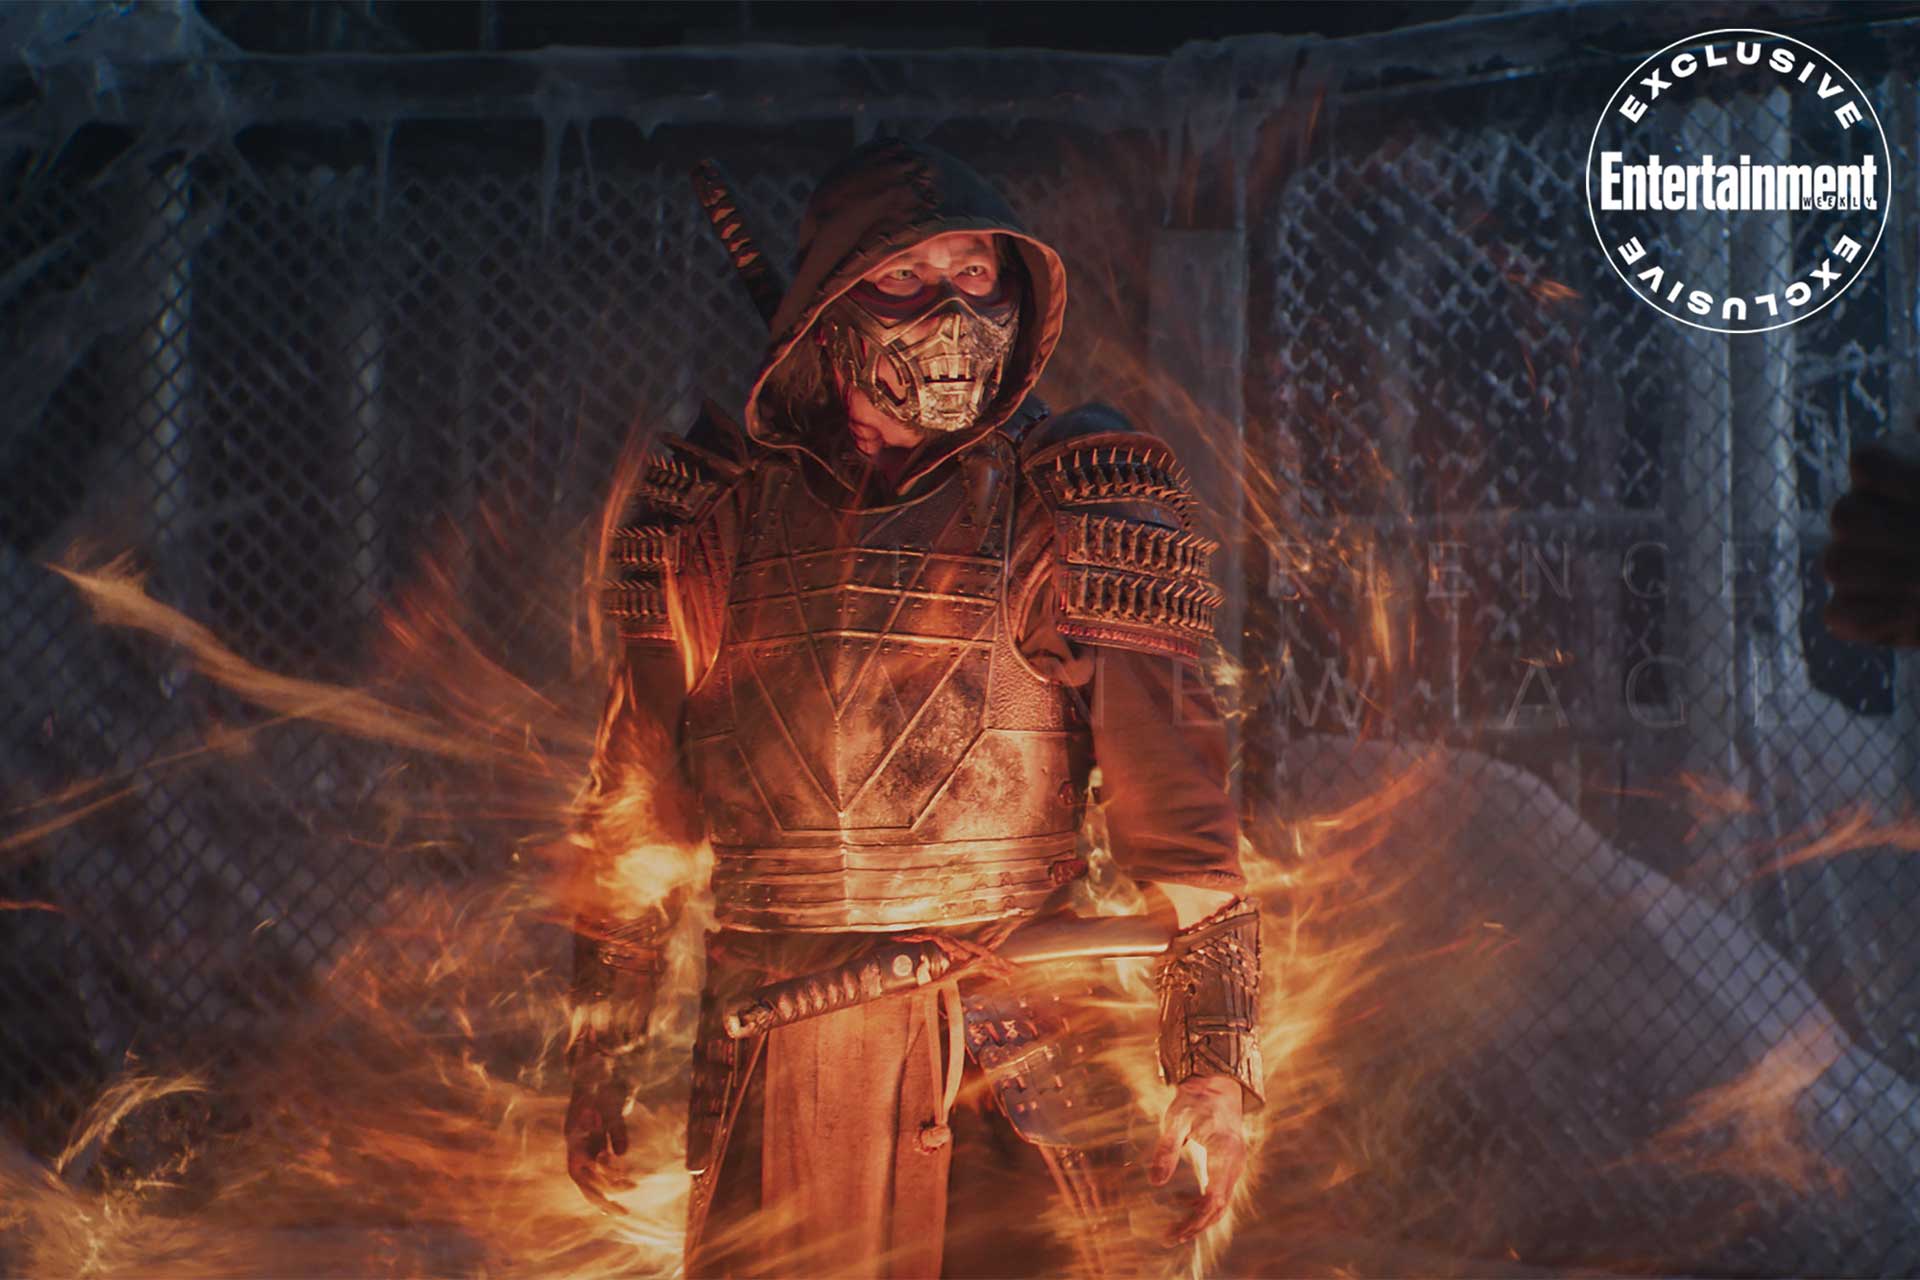 اسکورپیون و شعله های آتش در پیرامون او داخل فیلم مورتال کمبت با درجه سنی بزرگسال